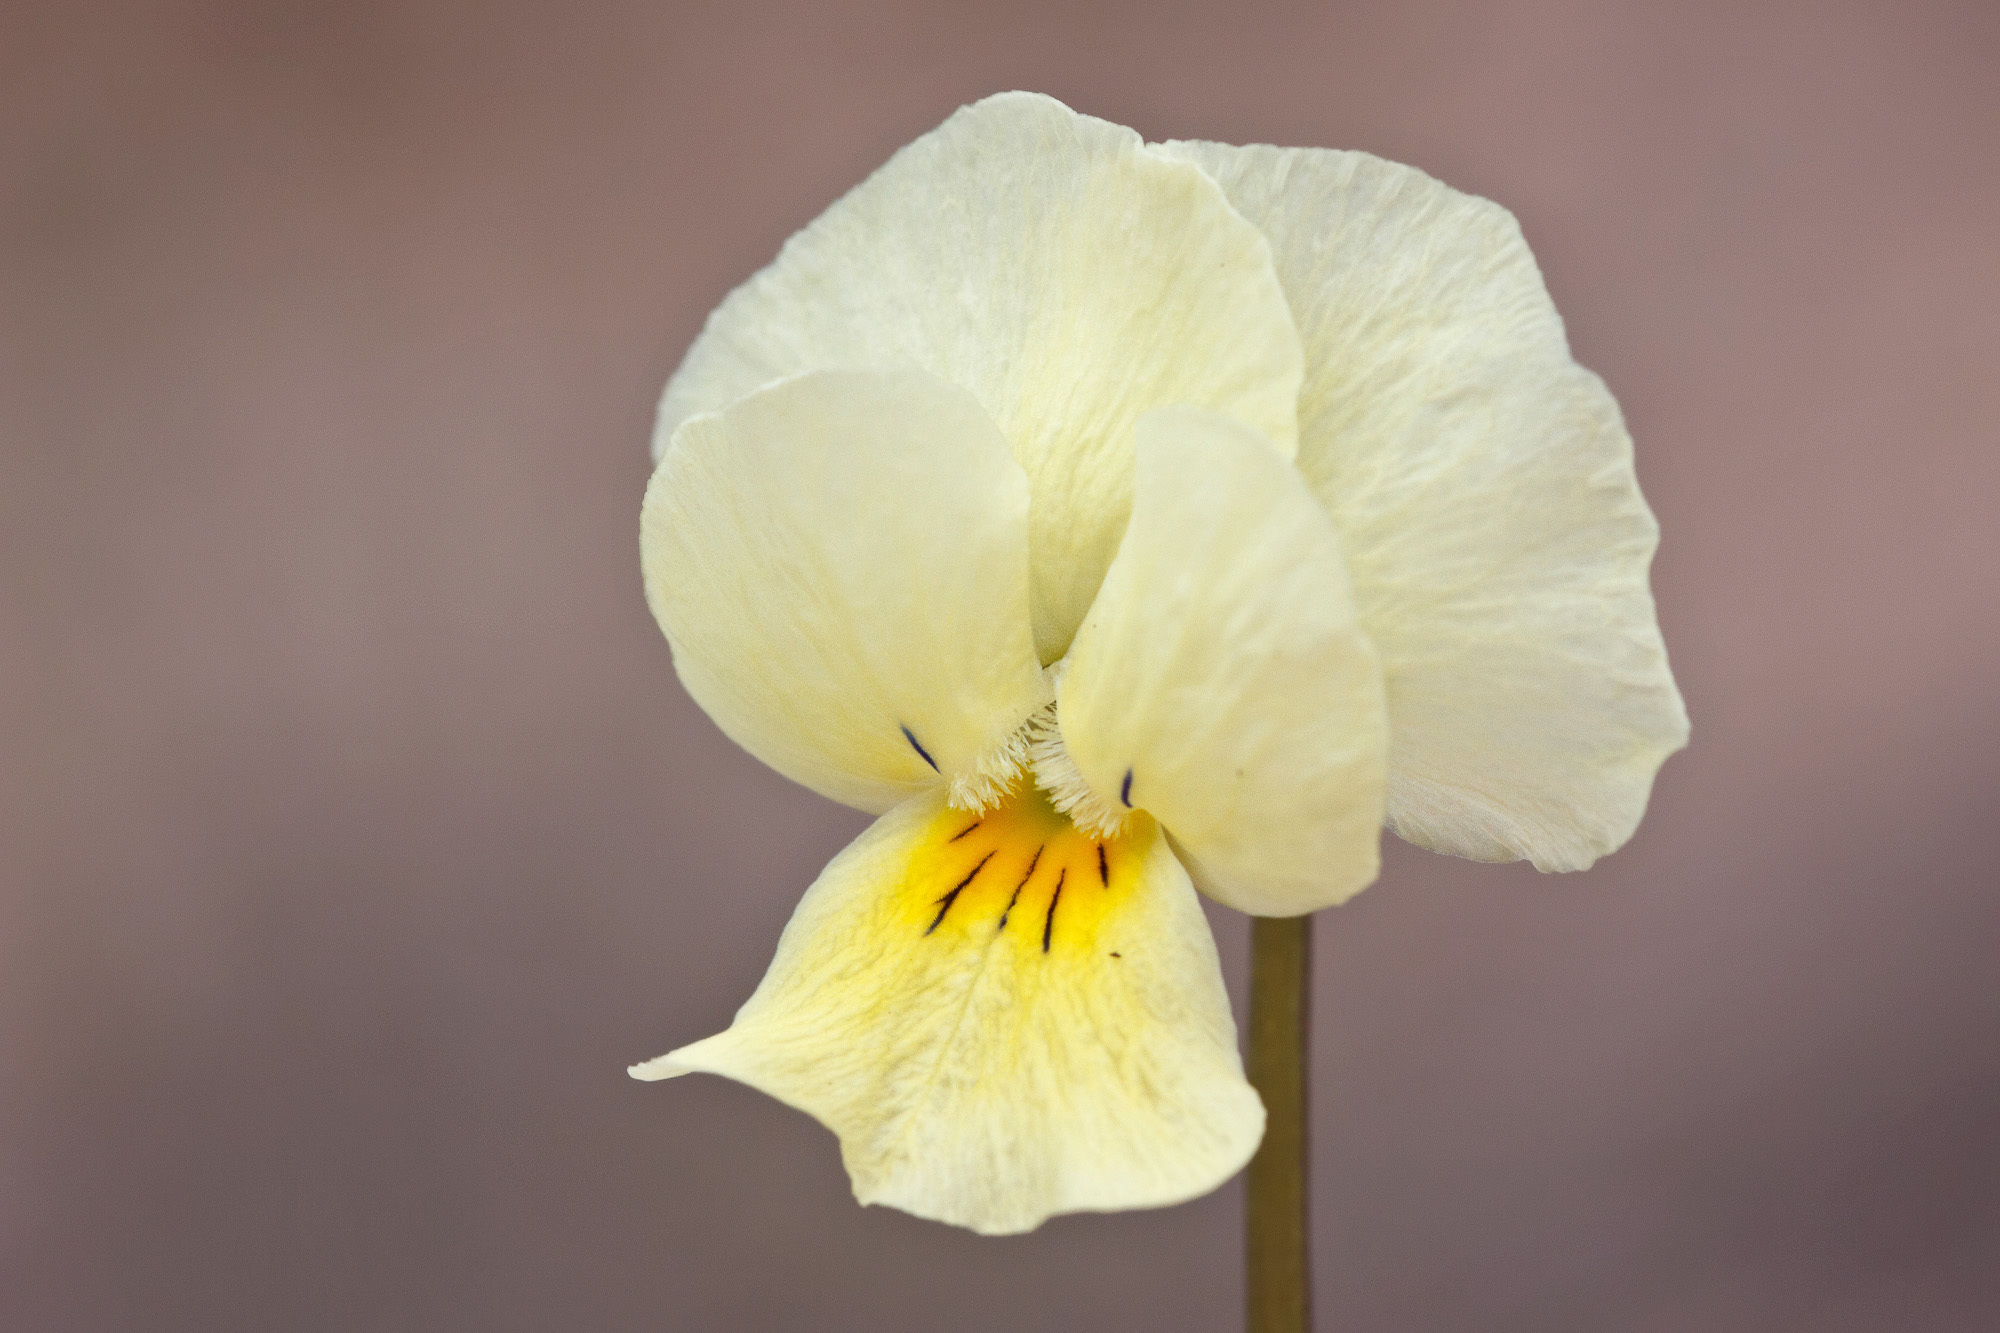 Viola arvensis (rights holder: Sarah Gregg)